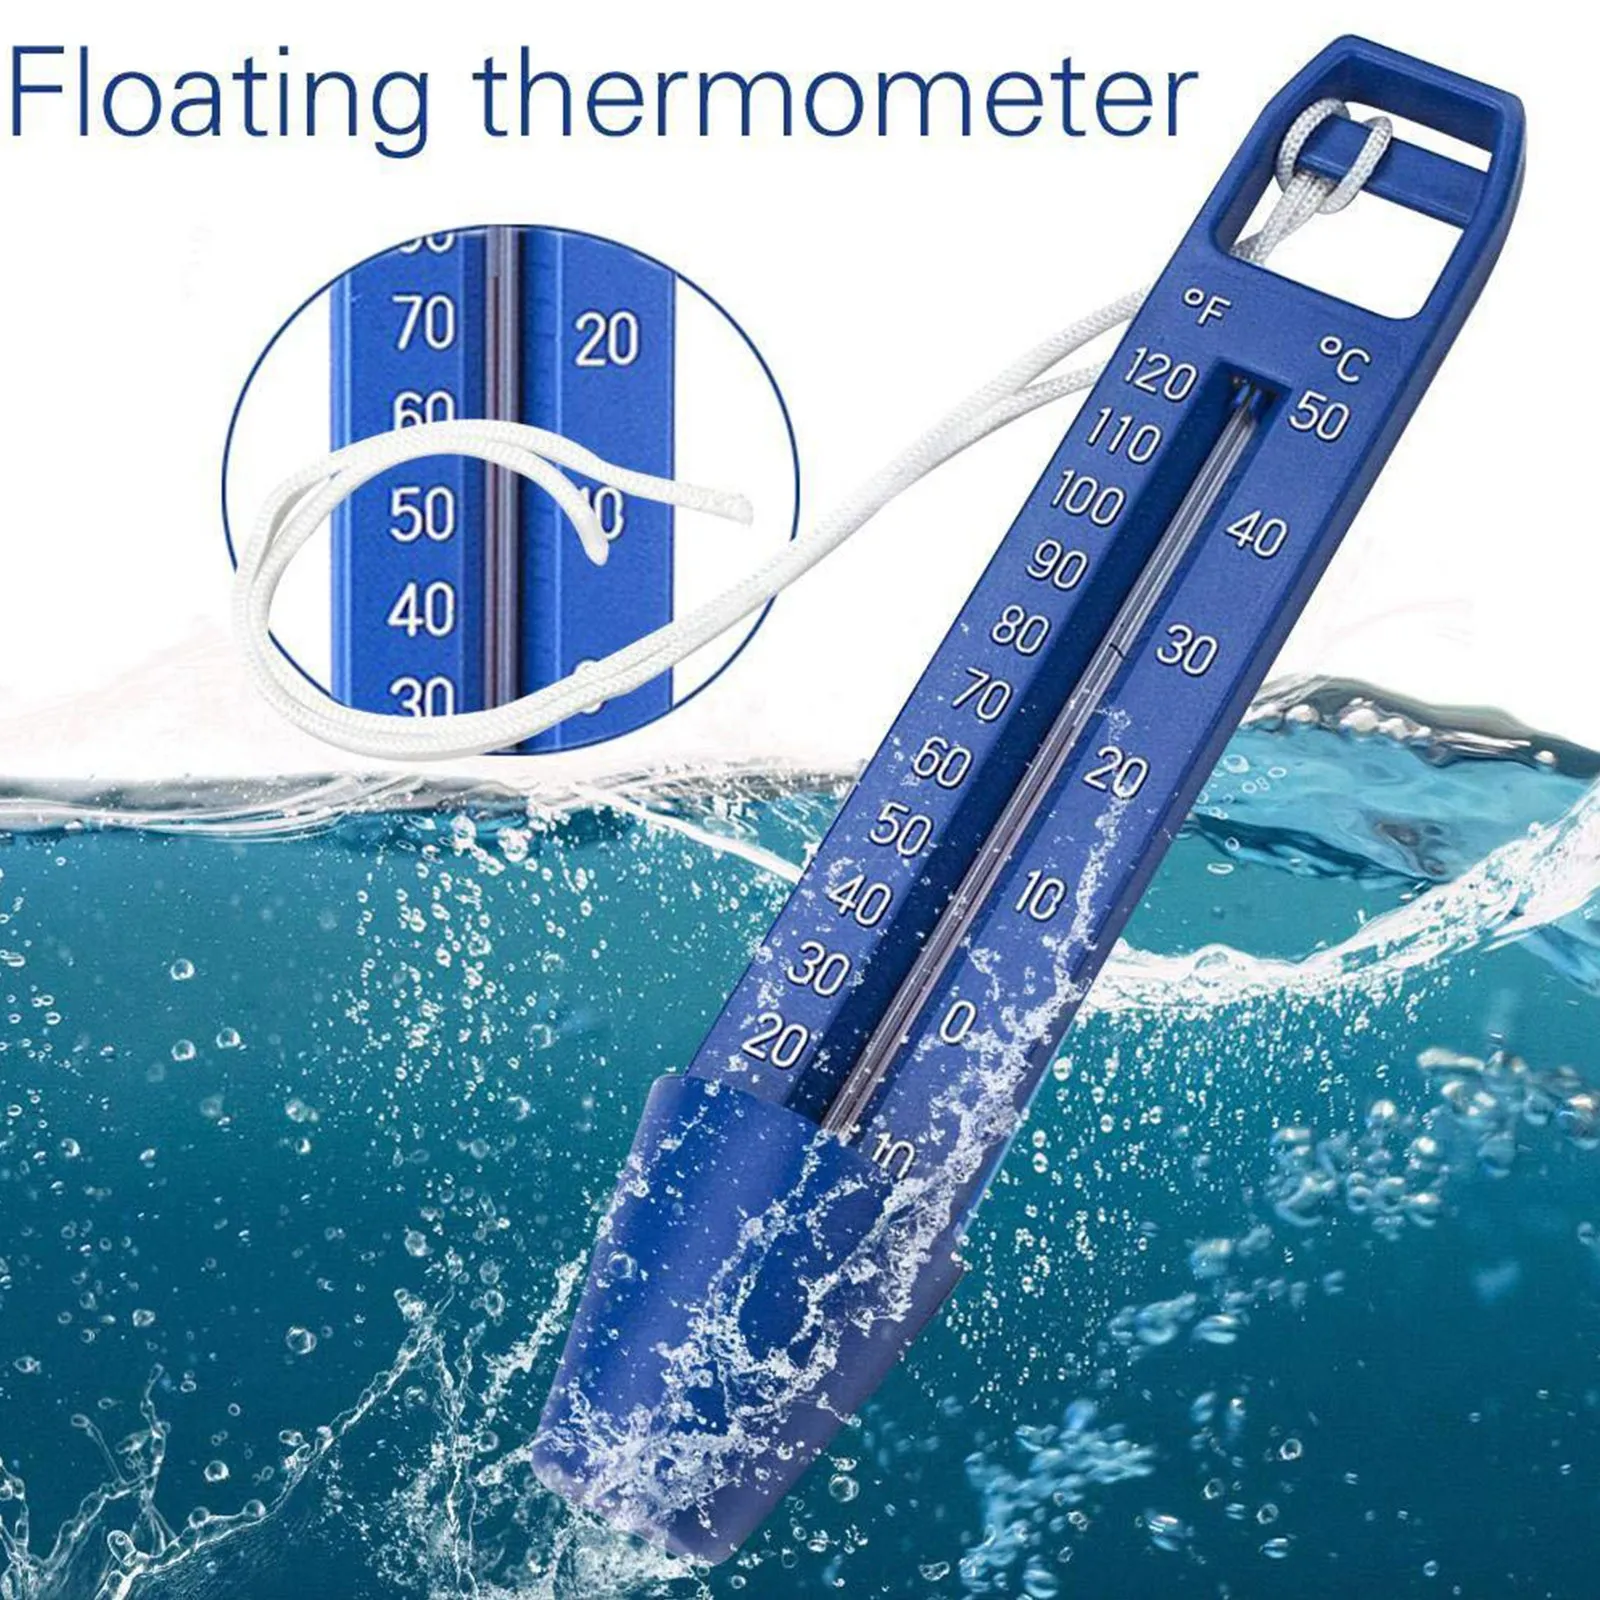 

1/2 шт. ABS Пластик плавательный бассейн плавающий термометр ванна спа-ванна рыбные пруды, термометр для воды, измерительный инструмент